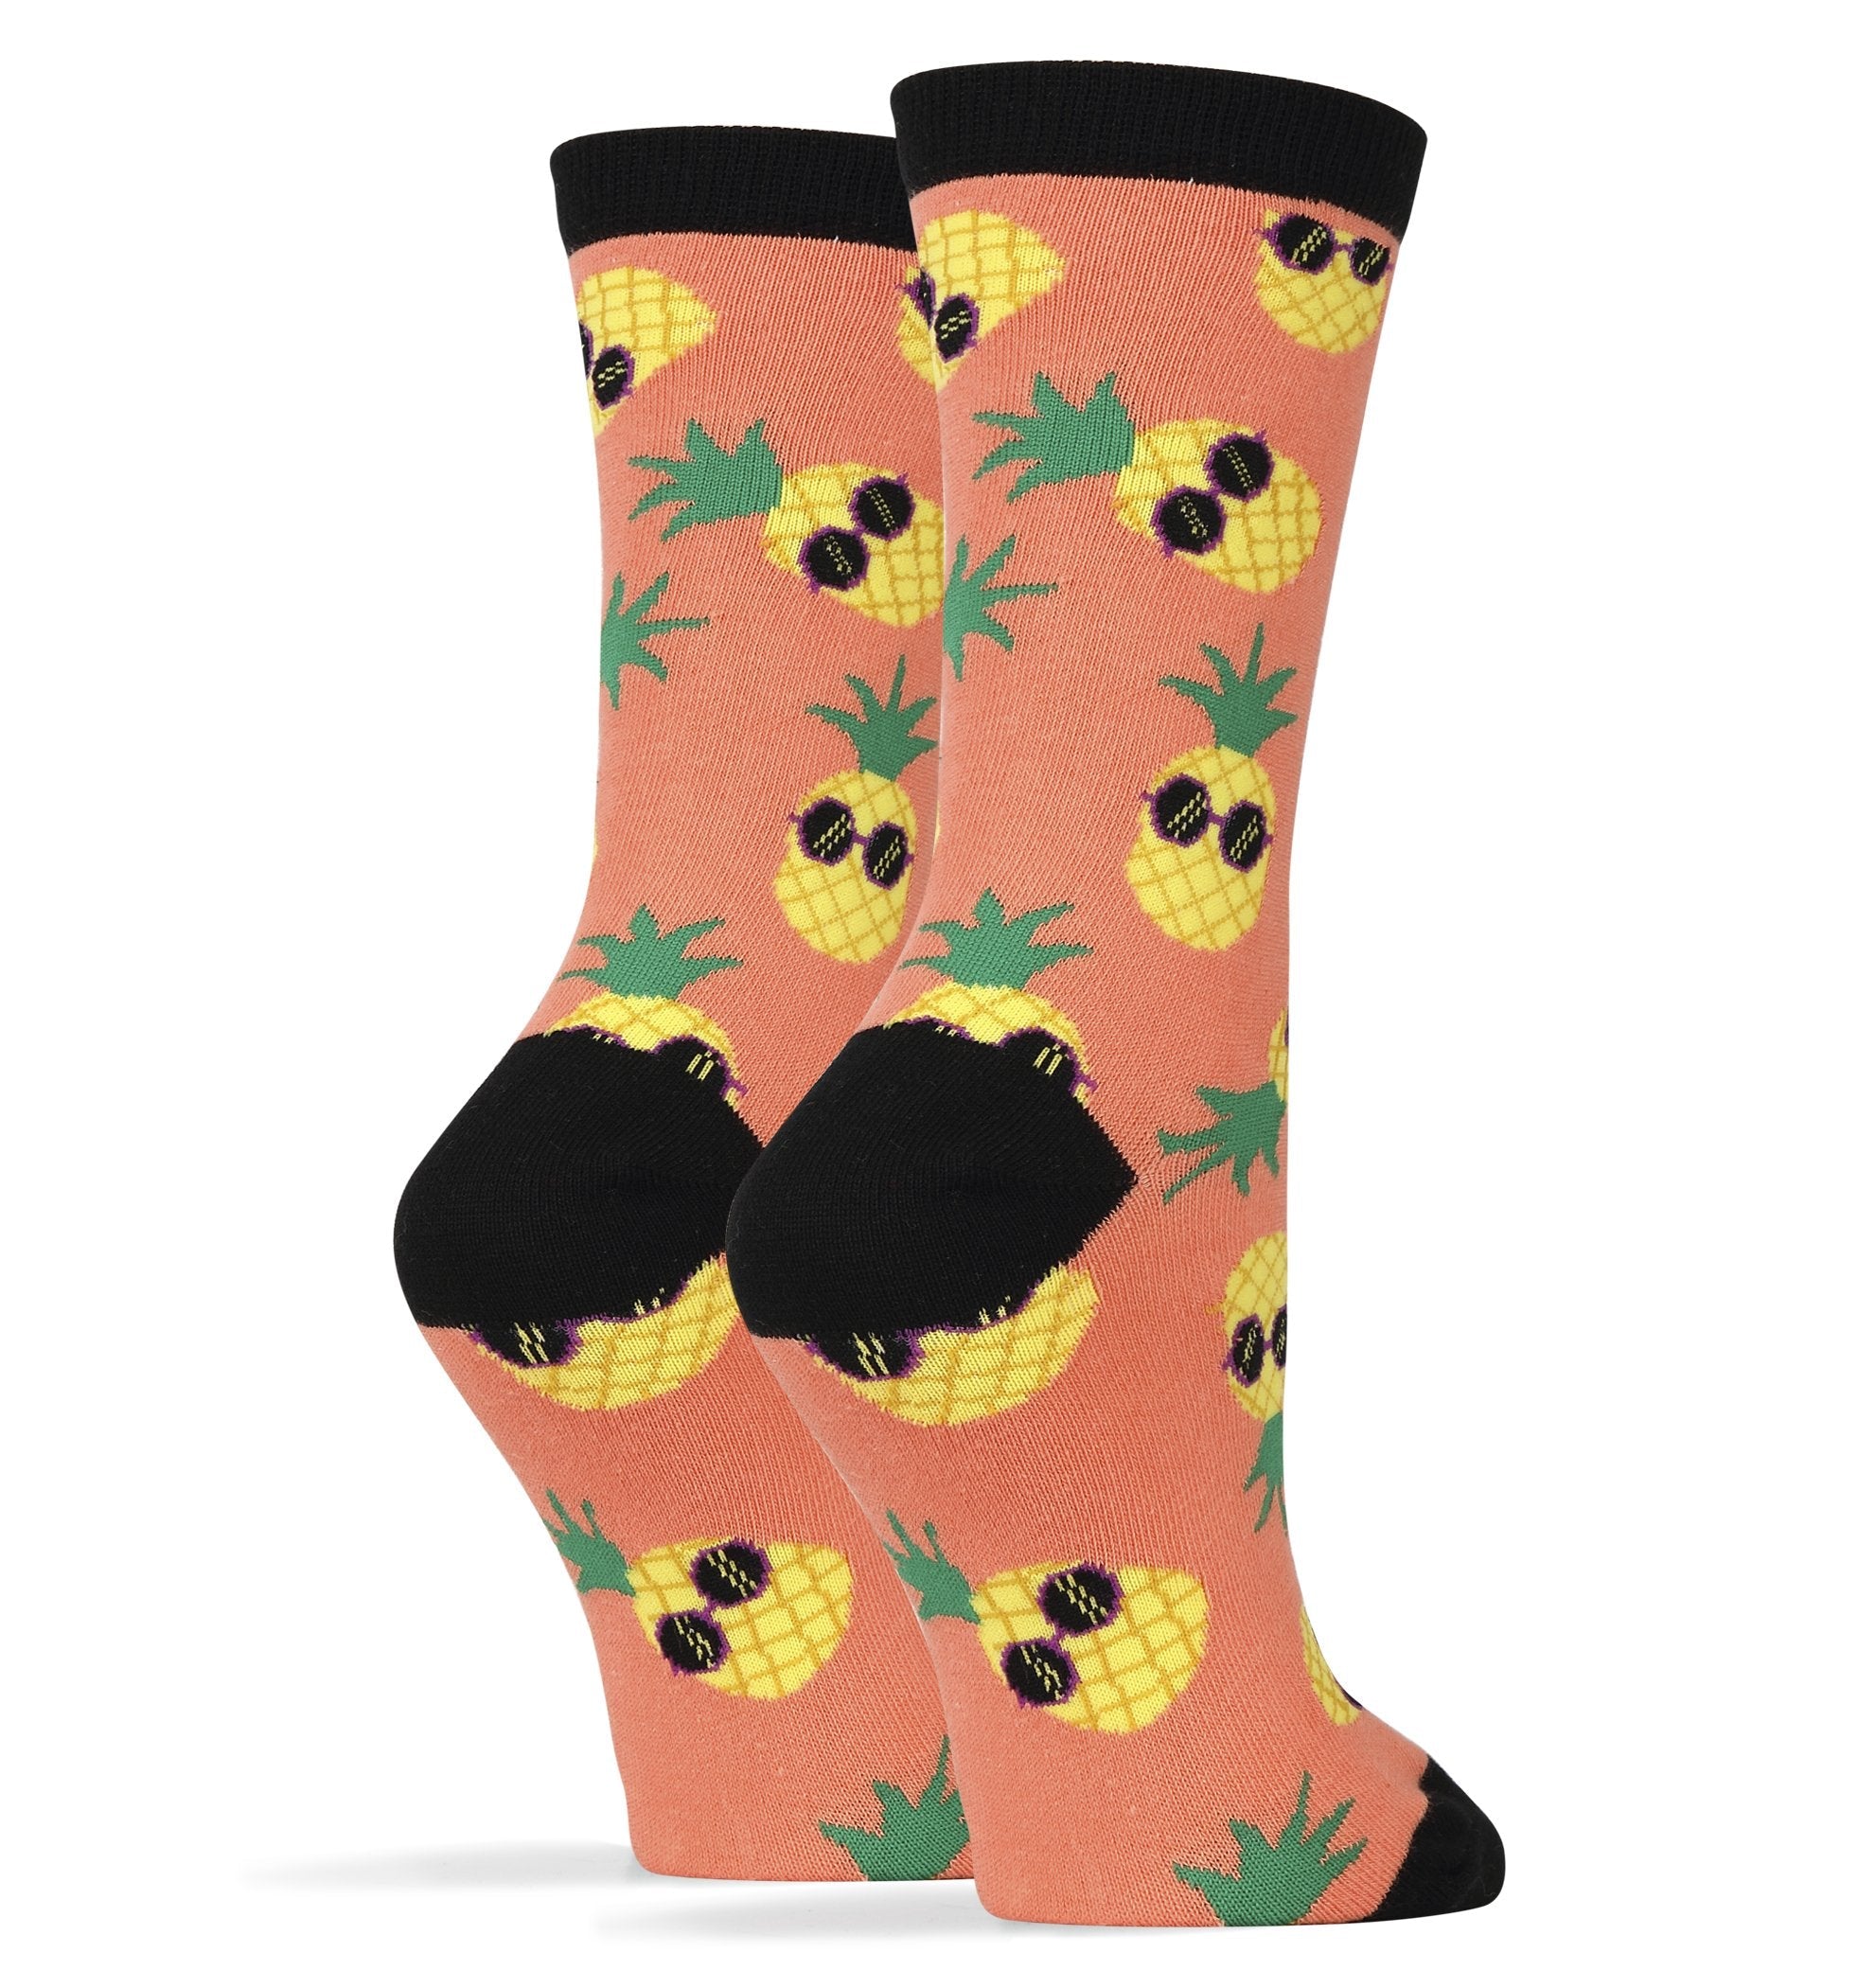 pineapple-dude-pink-womens-crew-socks-2-oooh-yeah-socks